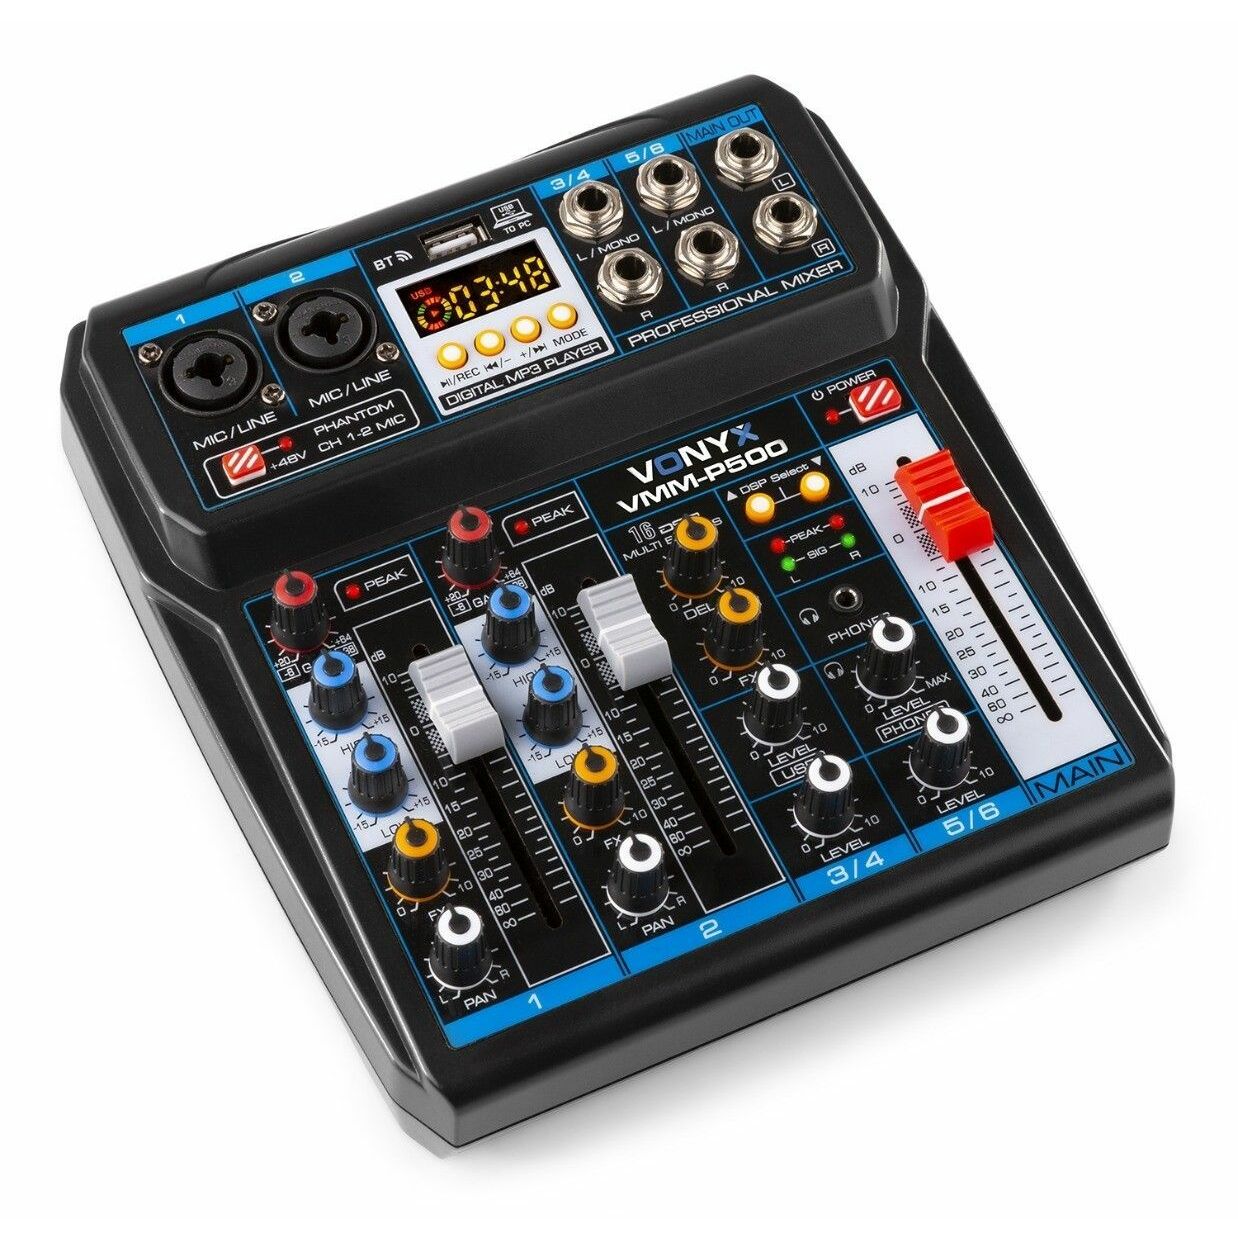 Retourdeal - Vonyx VMM-P500 mixer 4-kanaals met Bluetooth, DSP en mp3